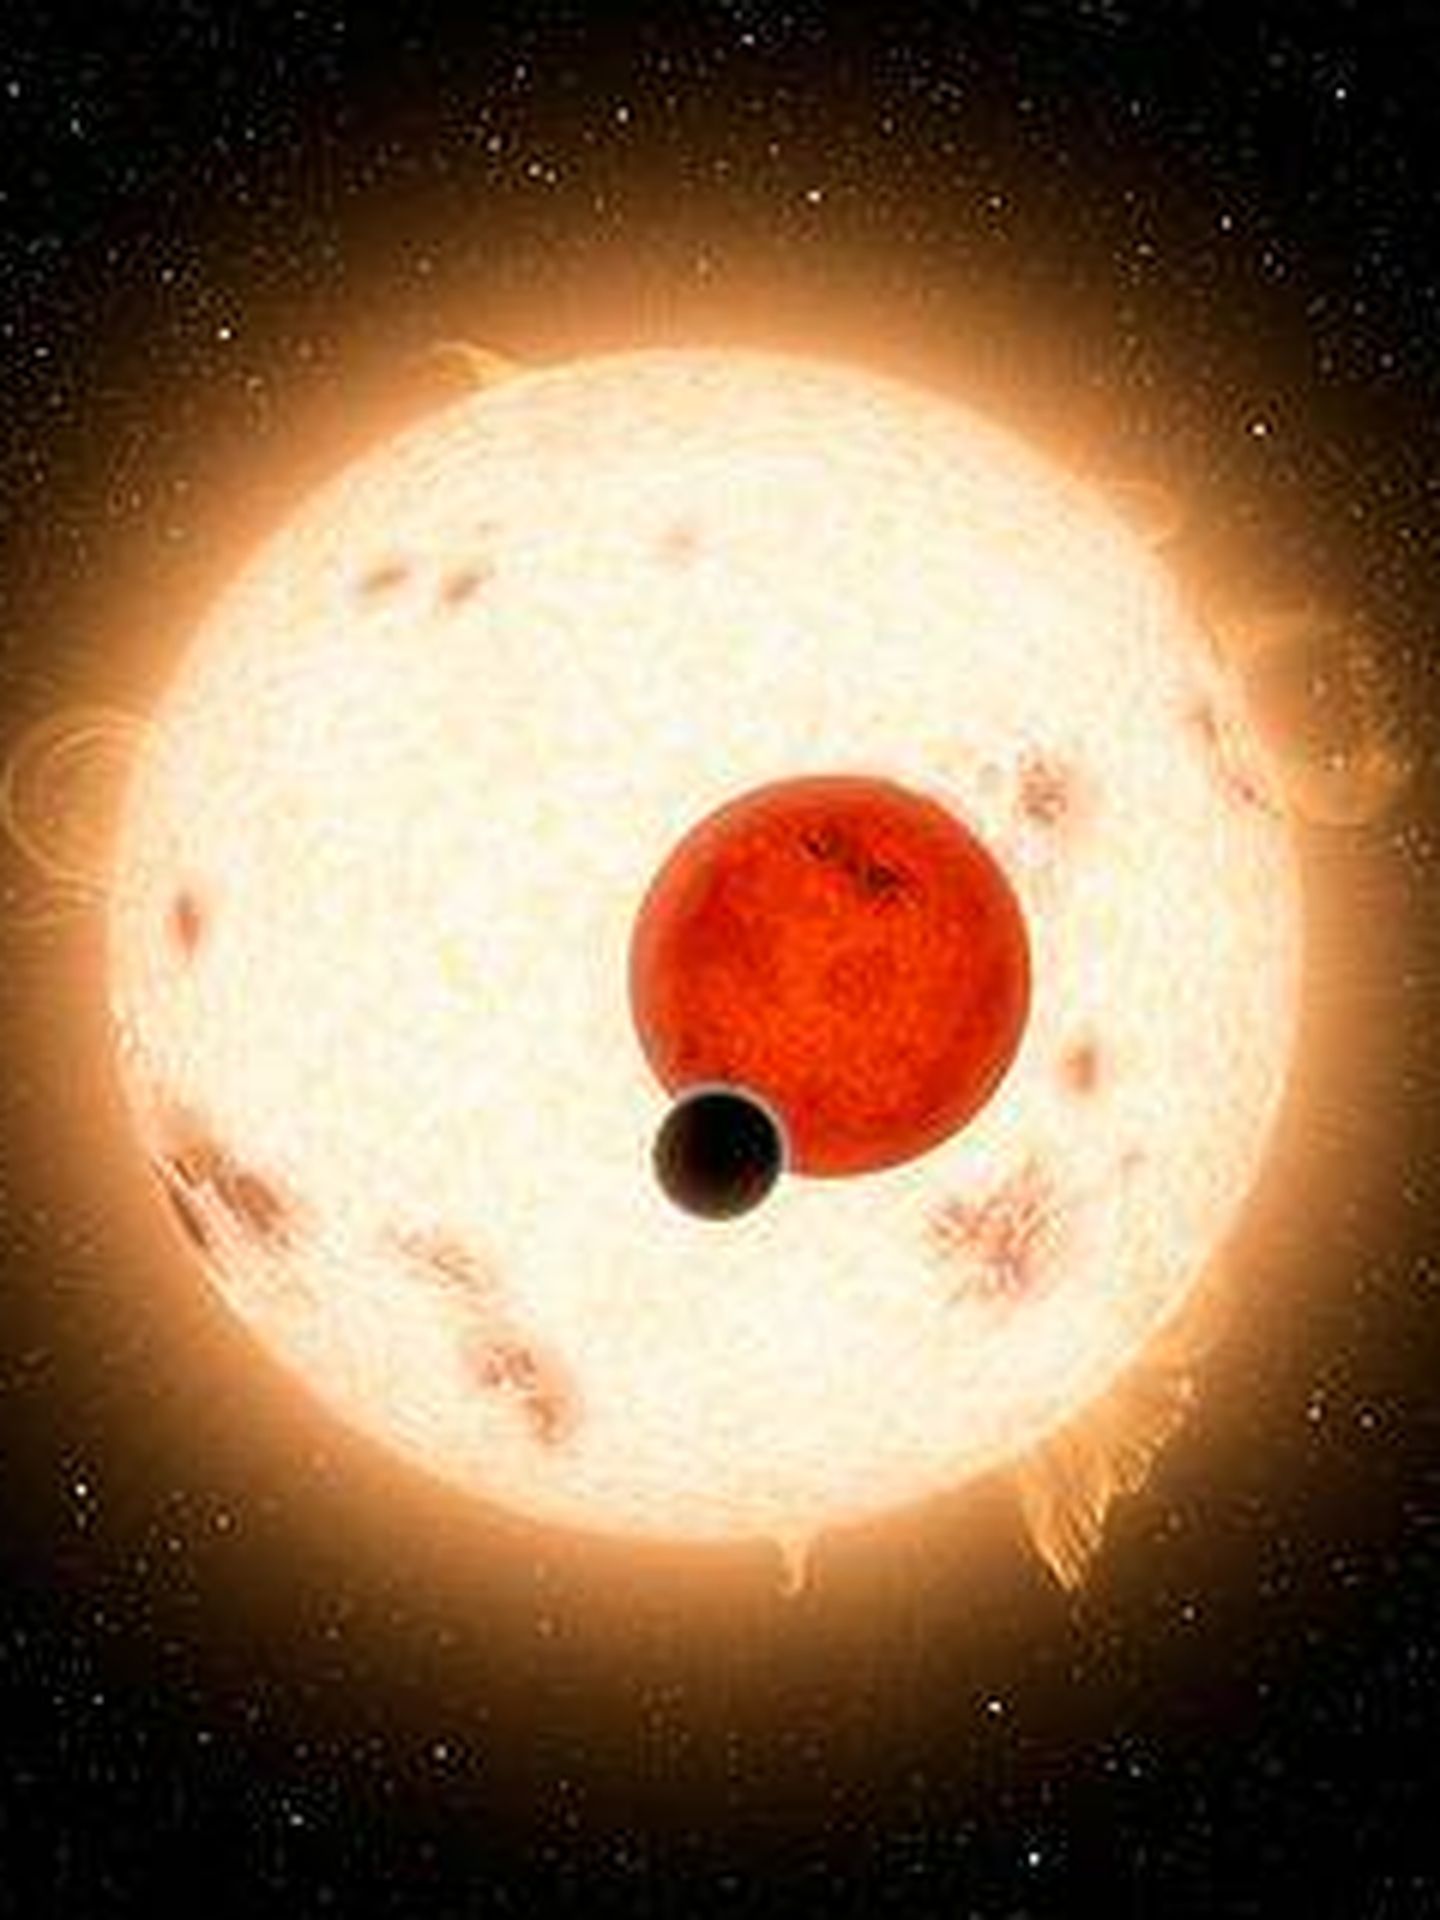 Representación artística del sistema Kepler-16, que muestra las dos estrellas eclipsadas y Kepler-16b transitando frente a ellas.(NASA)